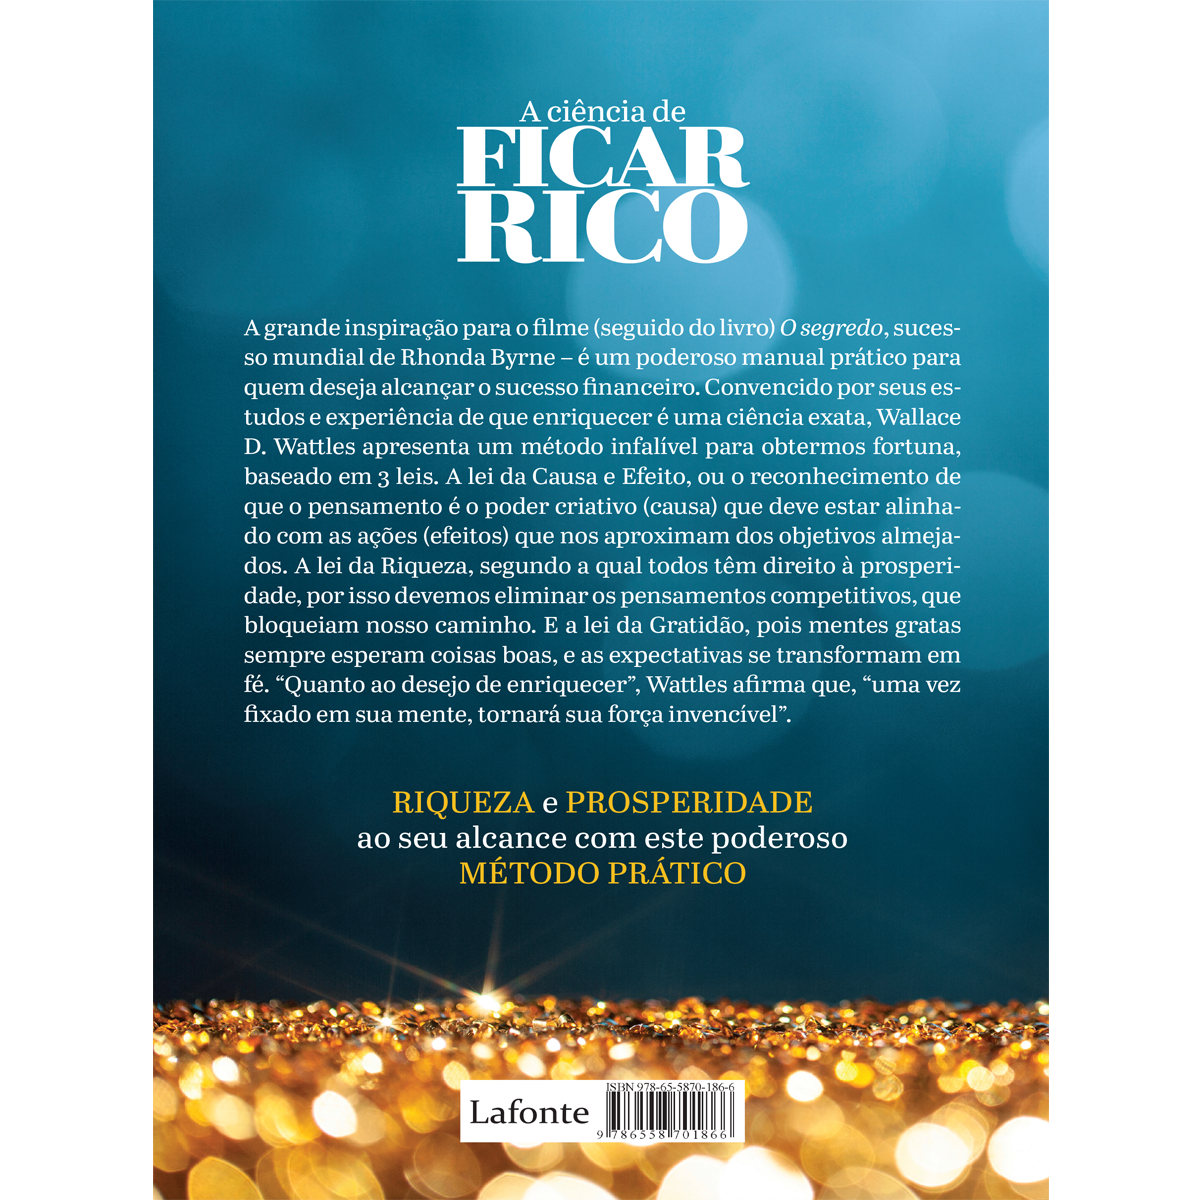 A Ciência de Ficar Rico: O segredo em 17 palavras sobre o sucesso e  dinheiro para criar a vida que você deseja eBook : D. Wattles, Wallace, D.  Souza, Fernando: : Livros